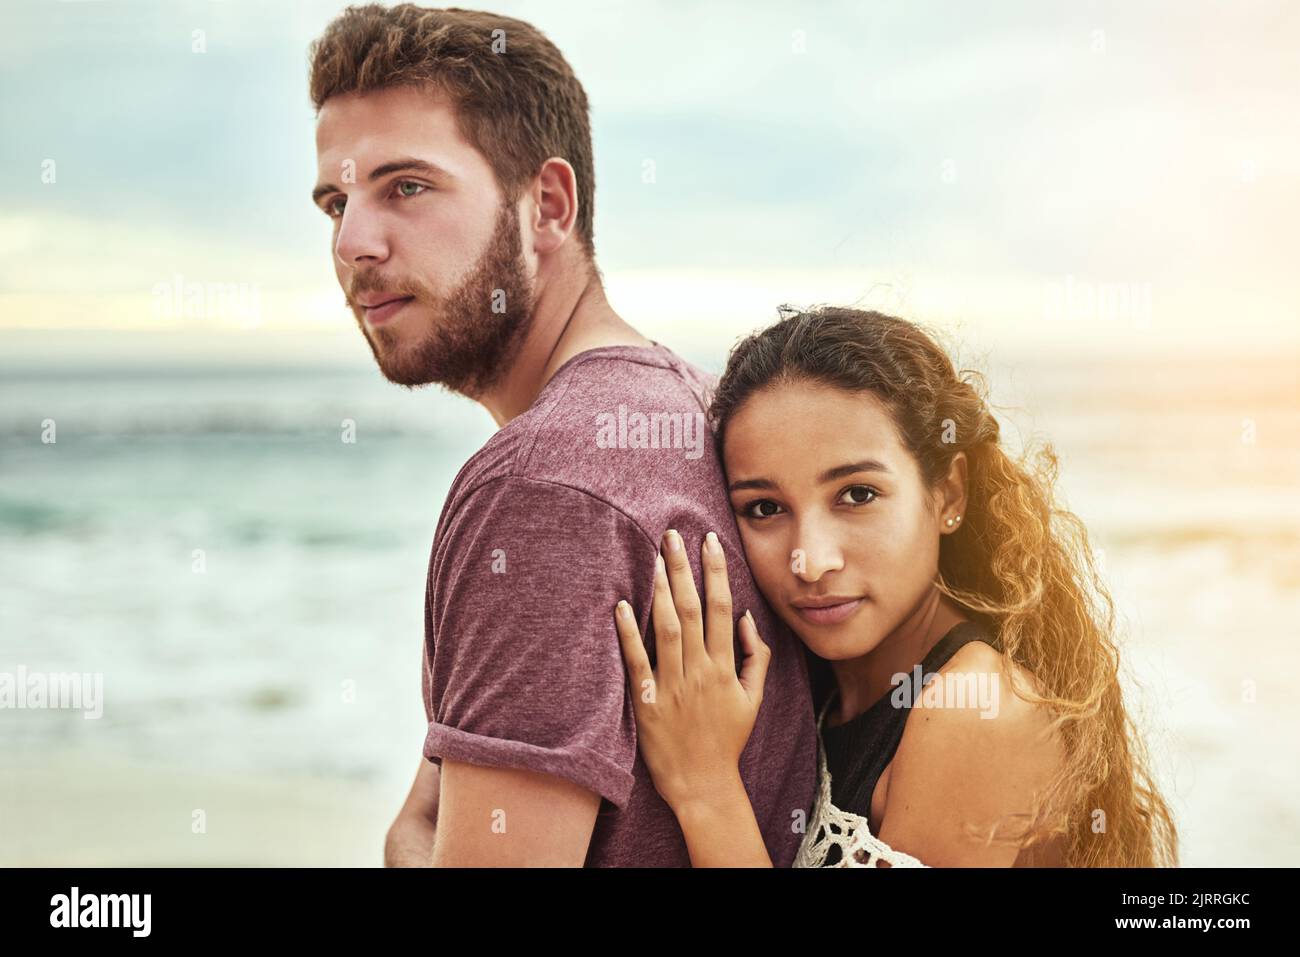 C'est tout. Un jeune couple affectueux qui apprécie son temps sur la plage. Banque D'Images